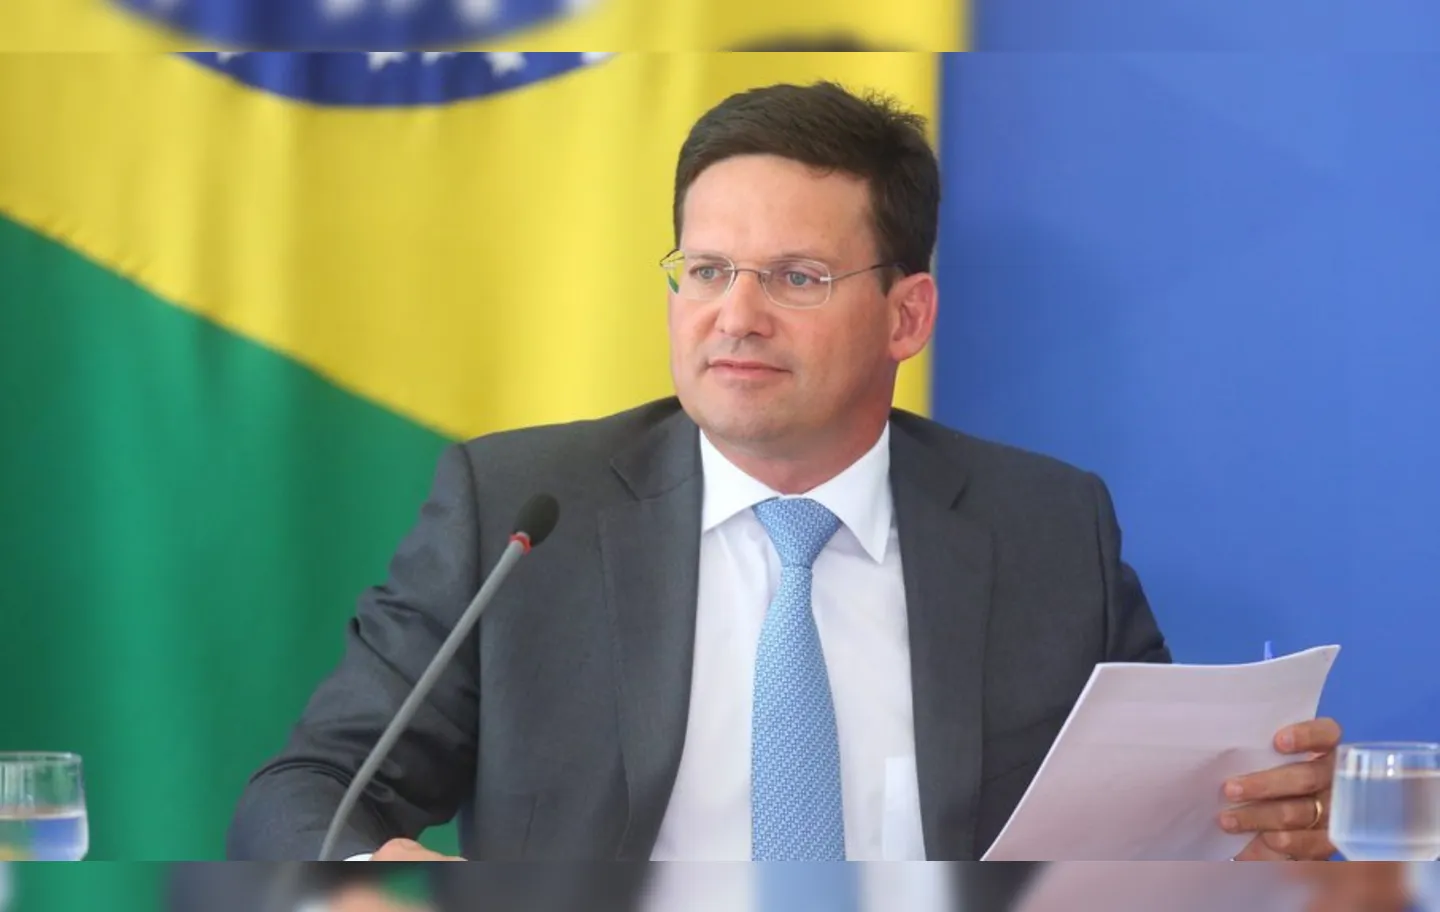 Ministro da Cidadania do governo Jair Bolsonaro (PL), João Roma (Republicanos) tenta se cacifar para ser candidato a governador da Bahia